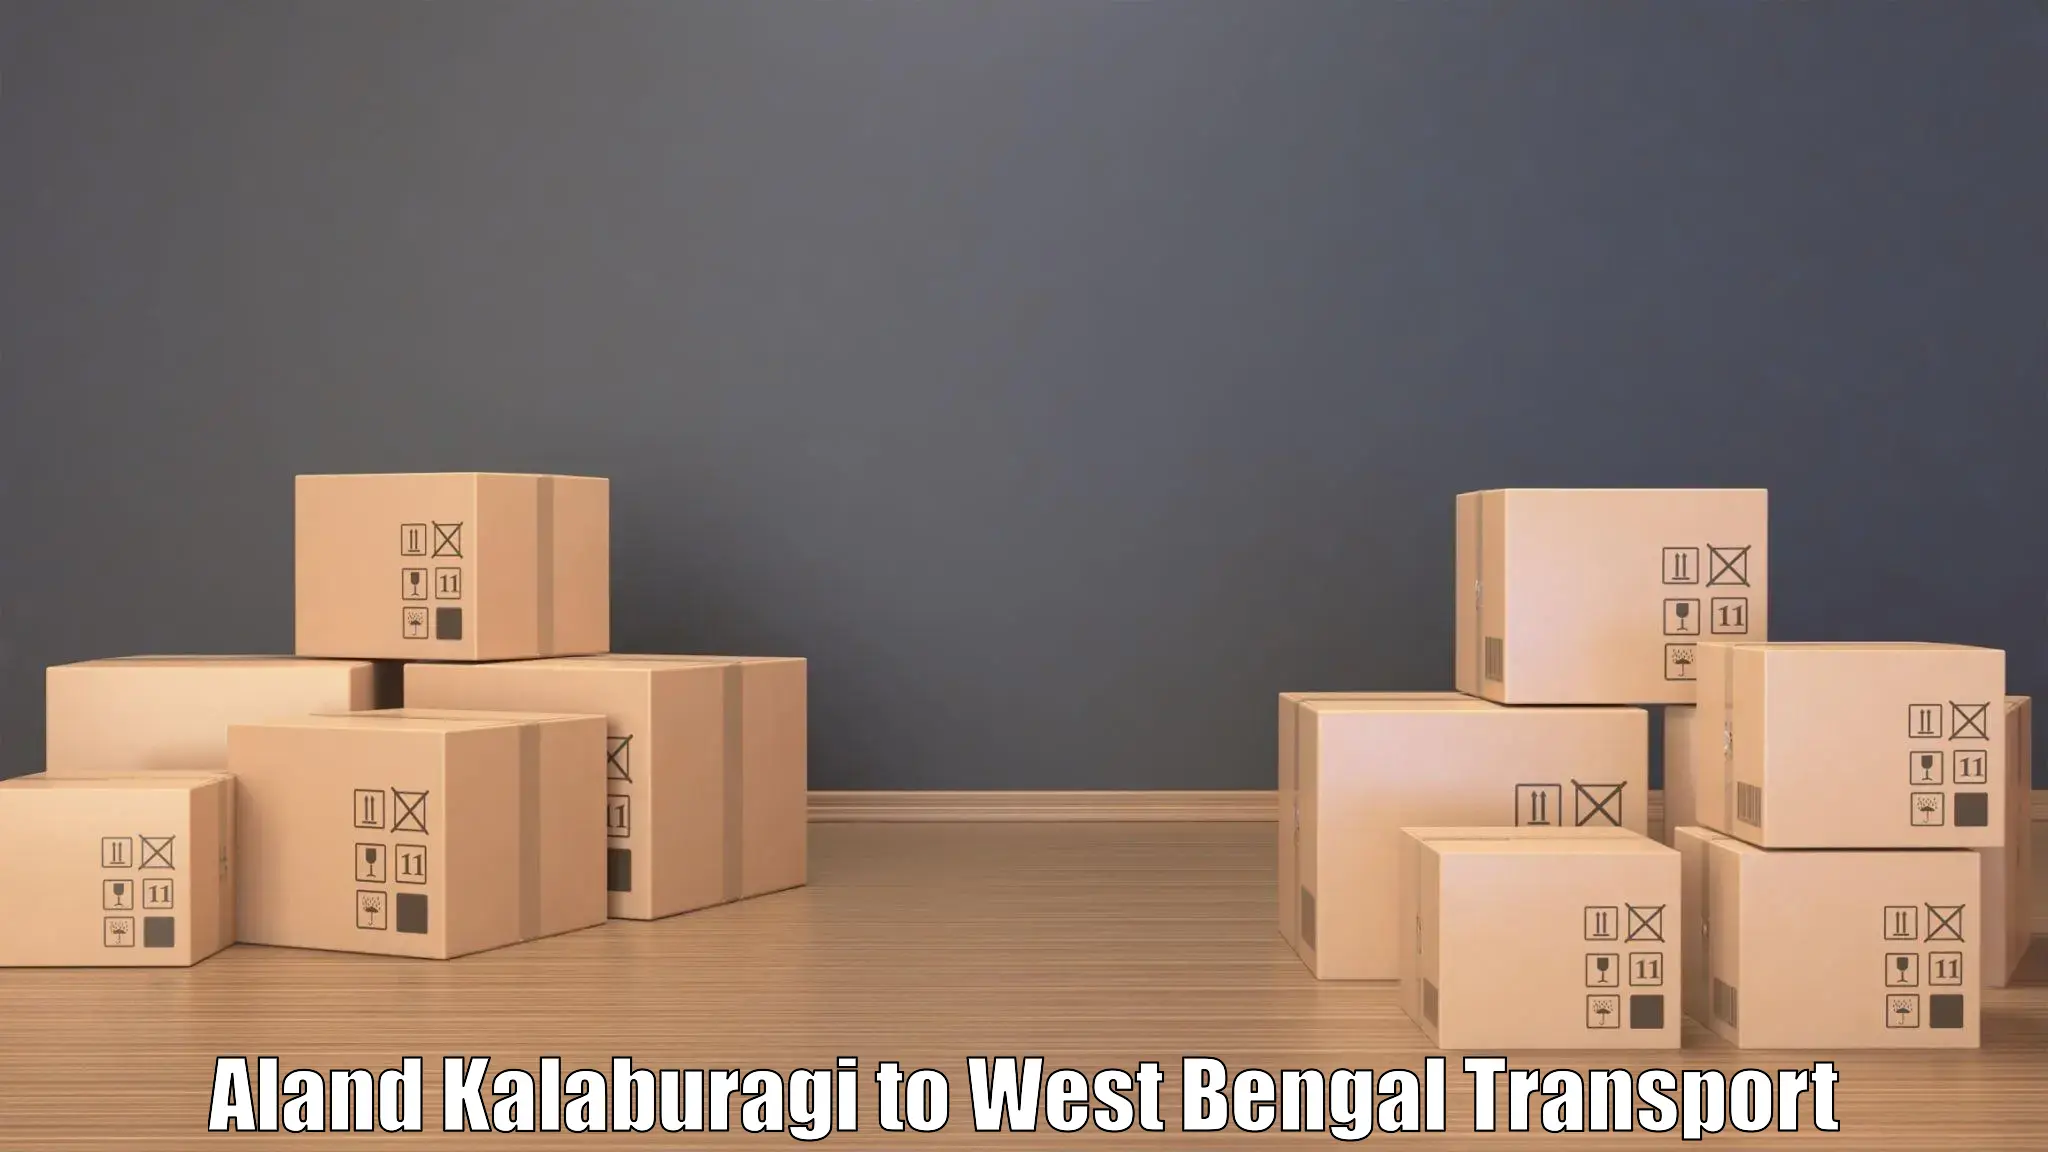 Interstate transport services Aland Kalaburagi to Domkal